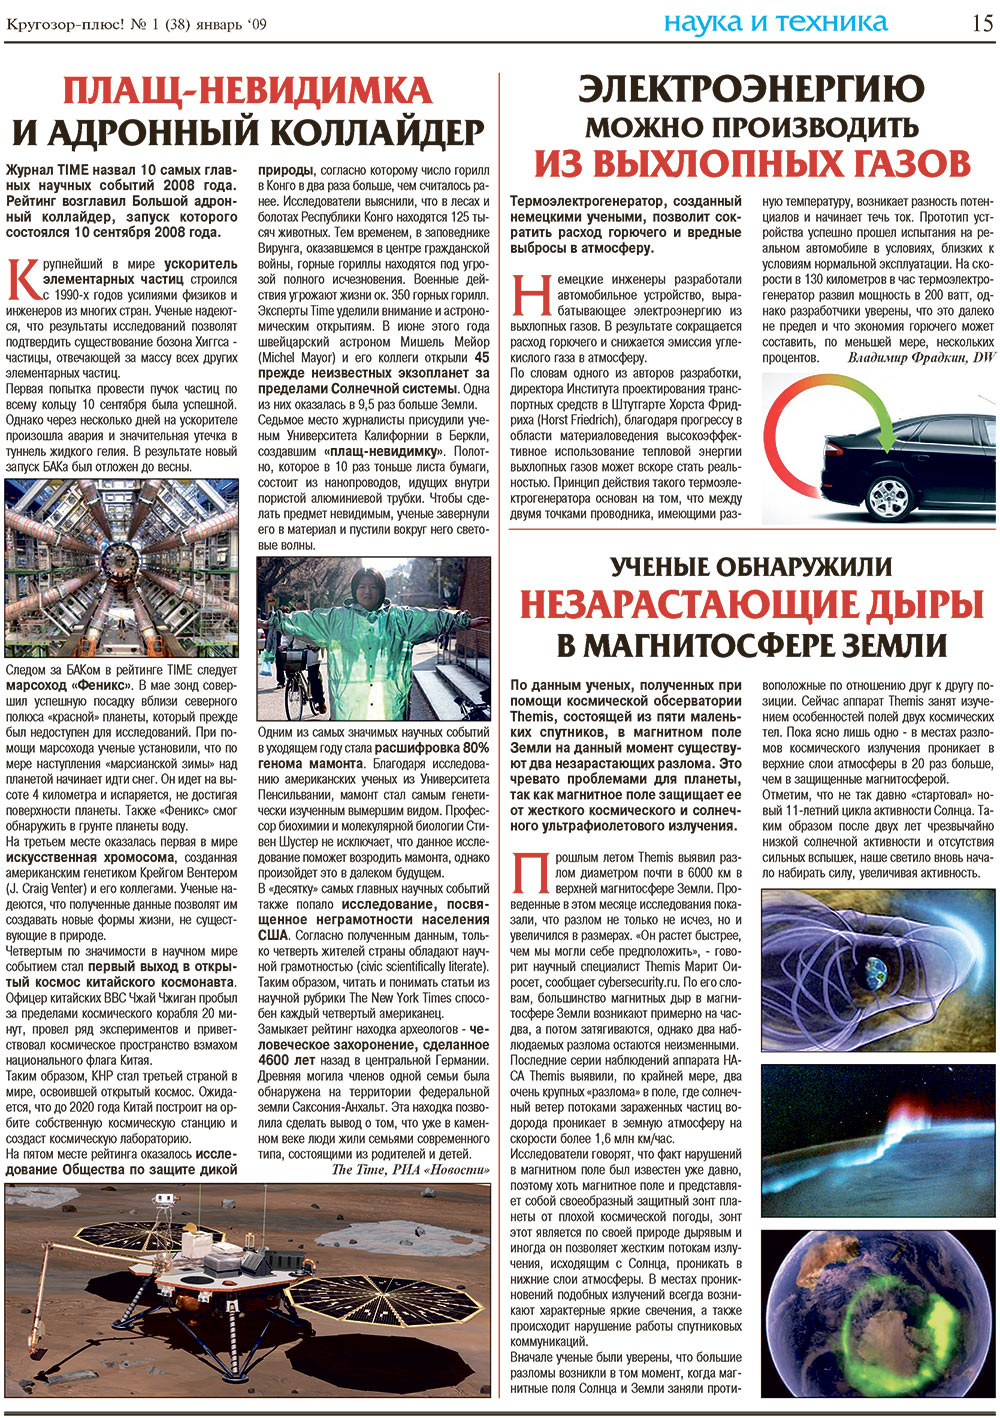 Кругозор плюс!, газета. 2009 №1 стр.15